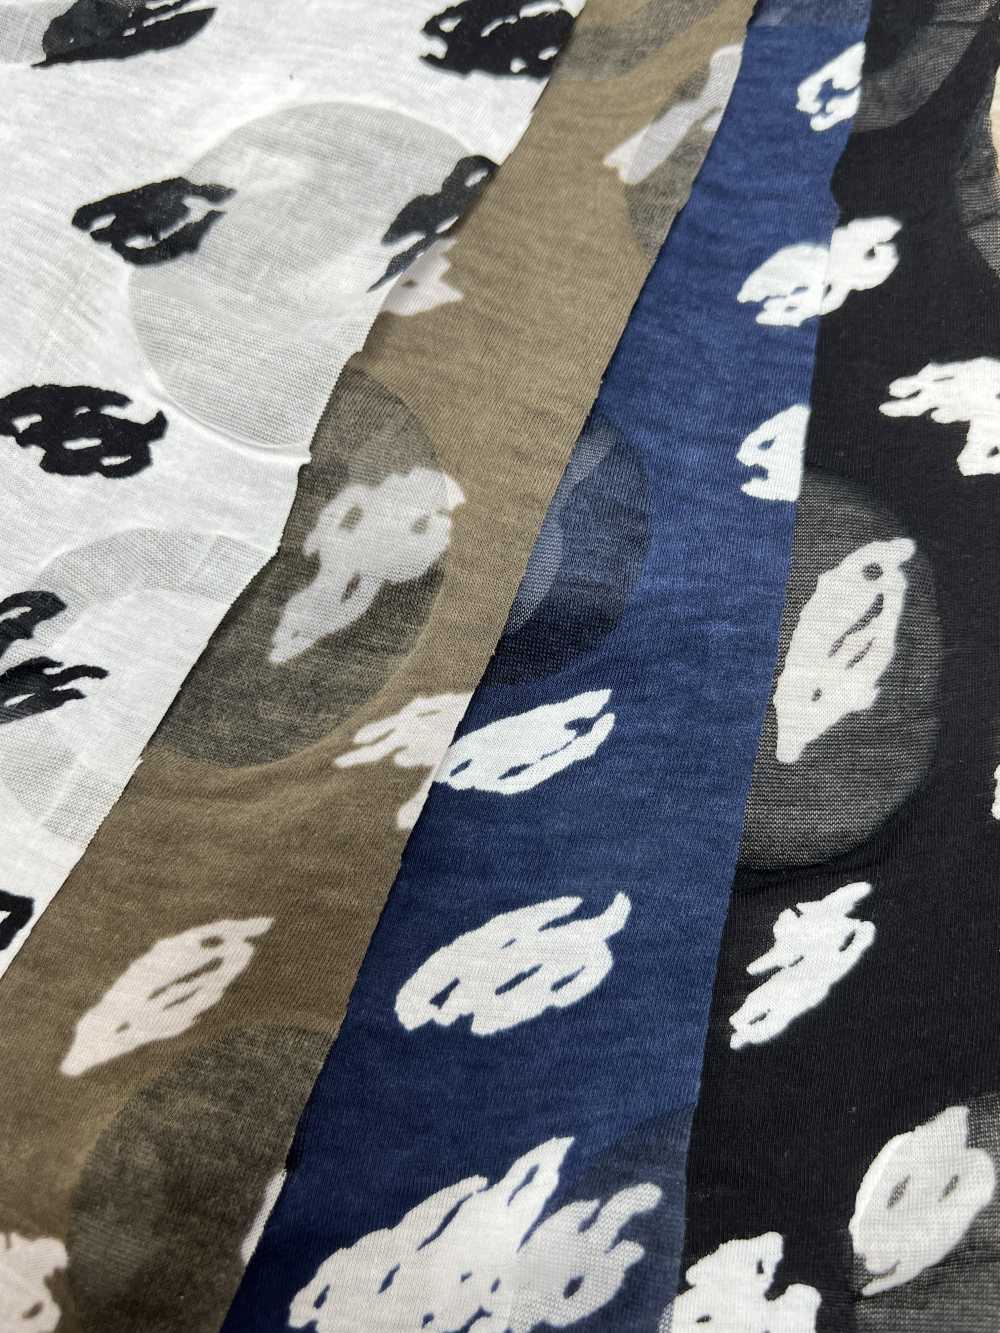 58016-1 波紋平紋針織單色 Kika 圖案[面料] 櫻花公司